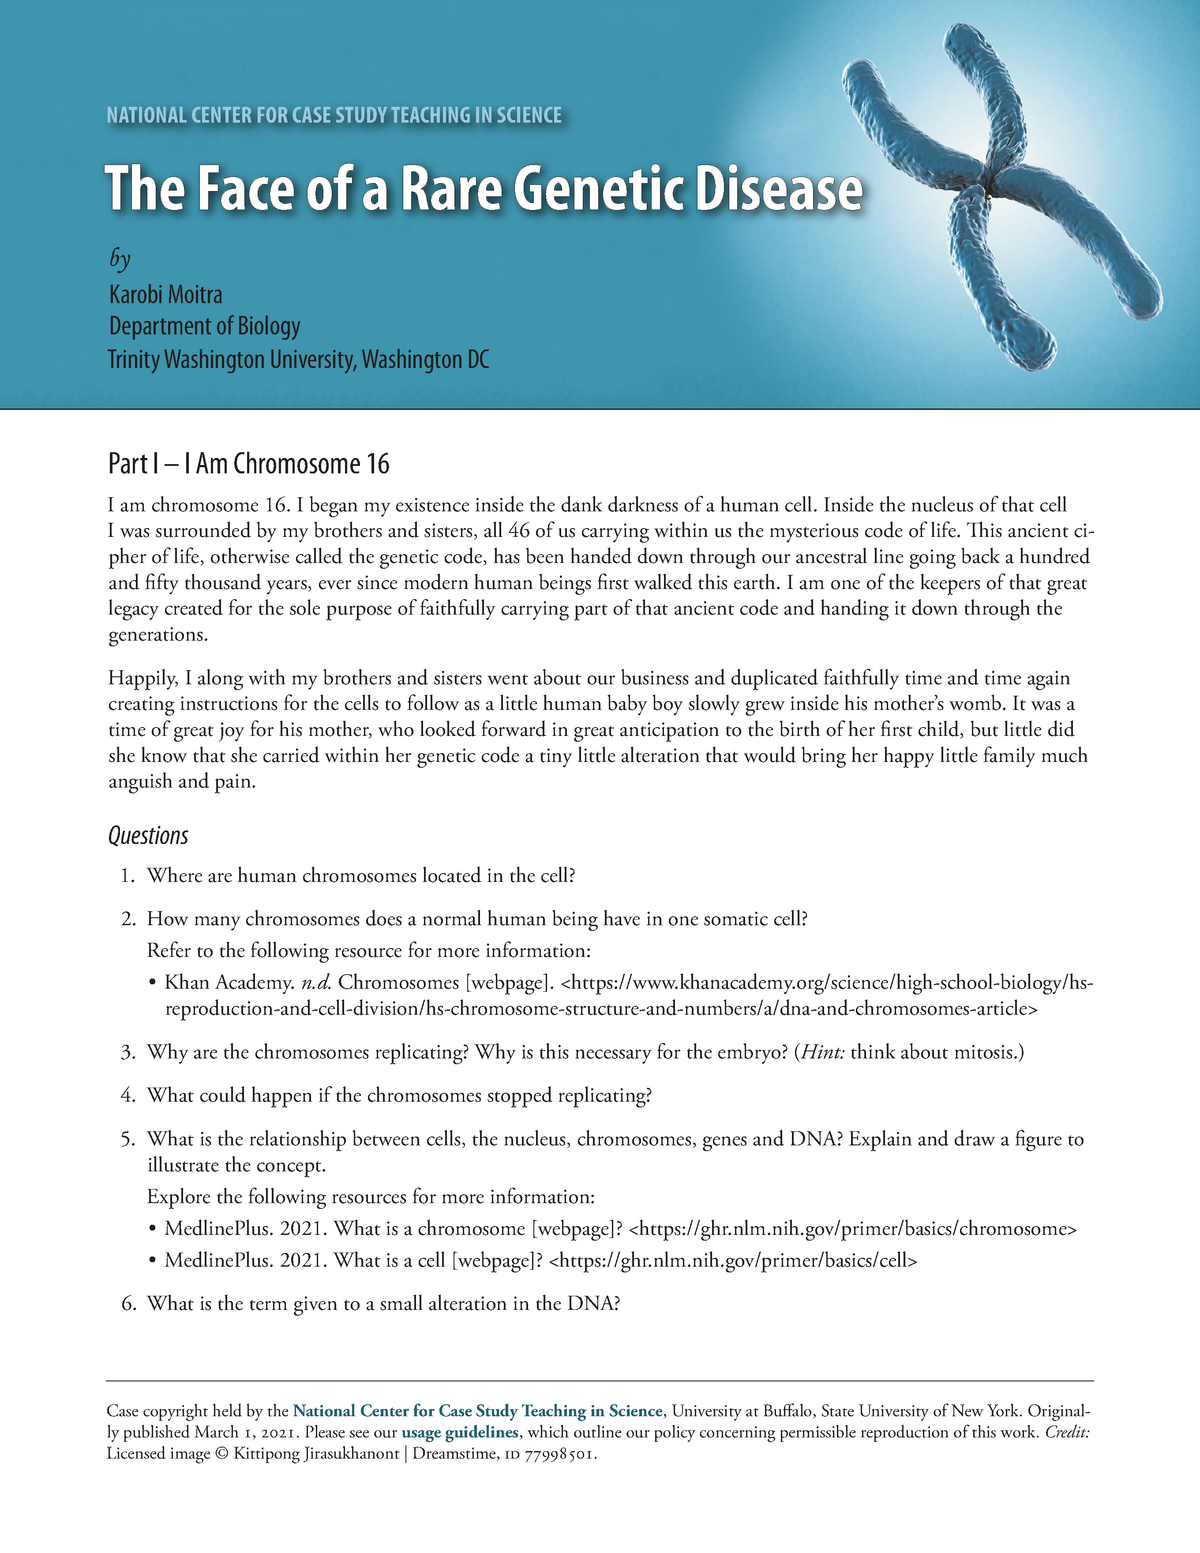 a case study on genetic disease